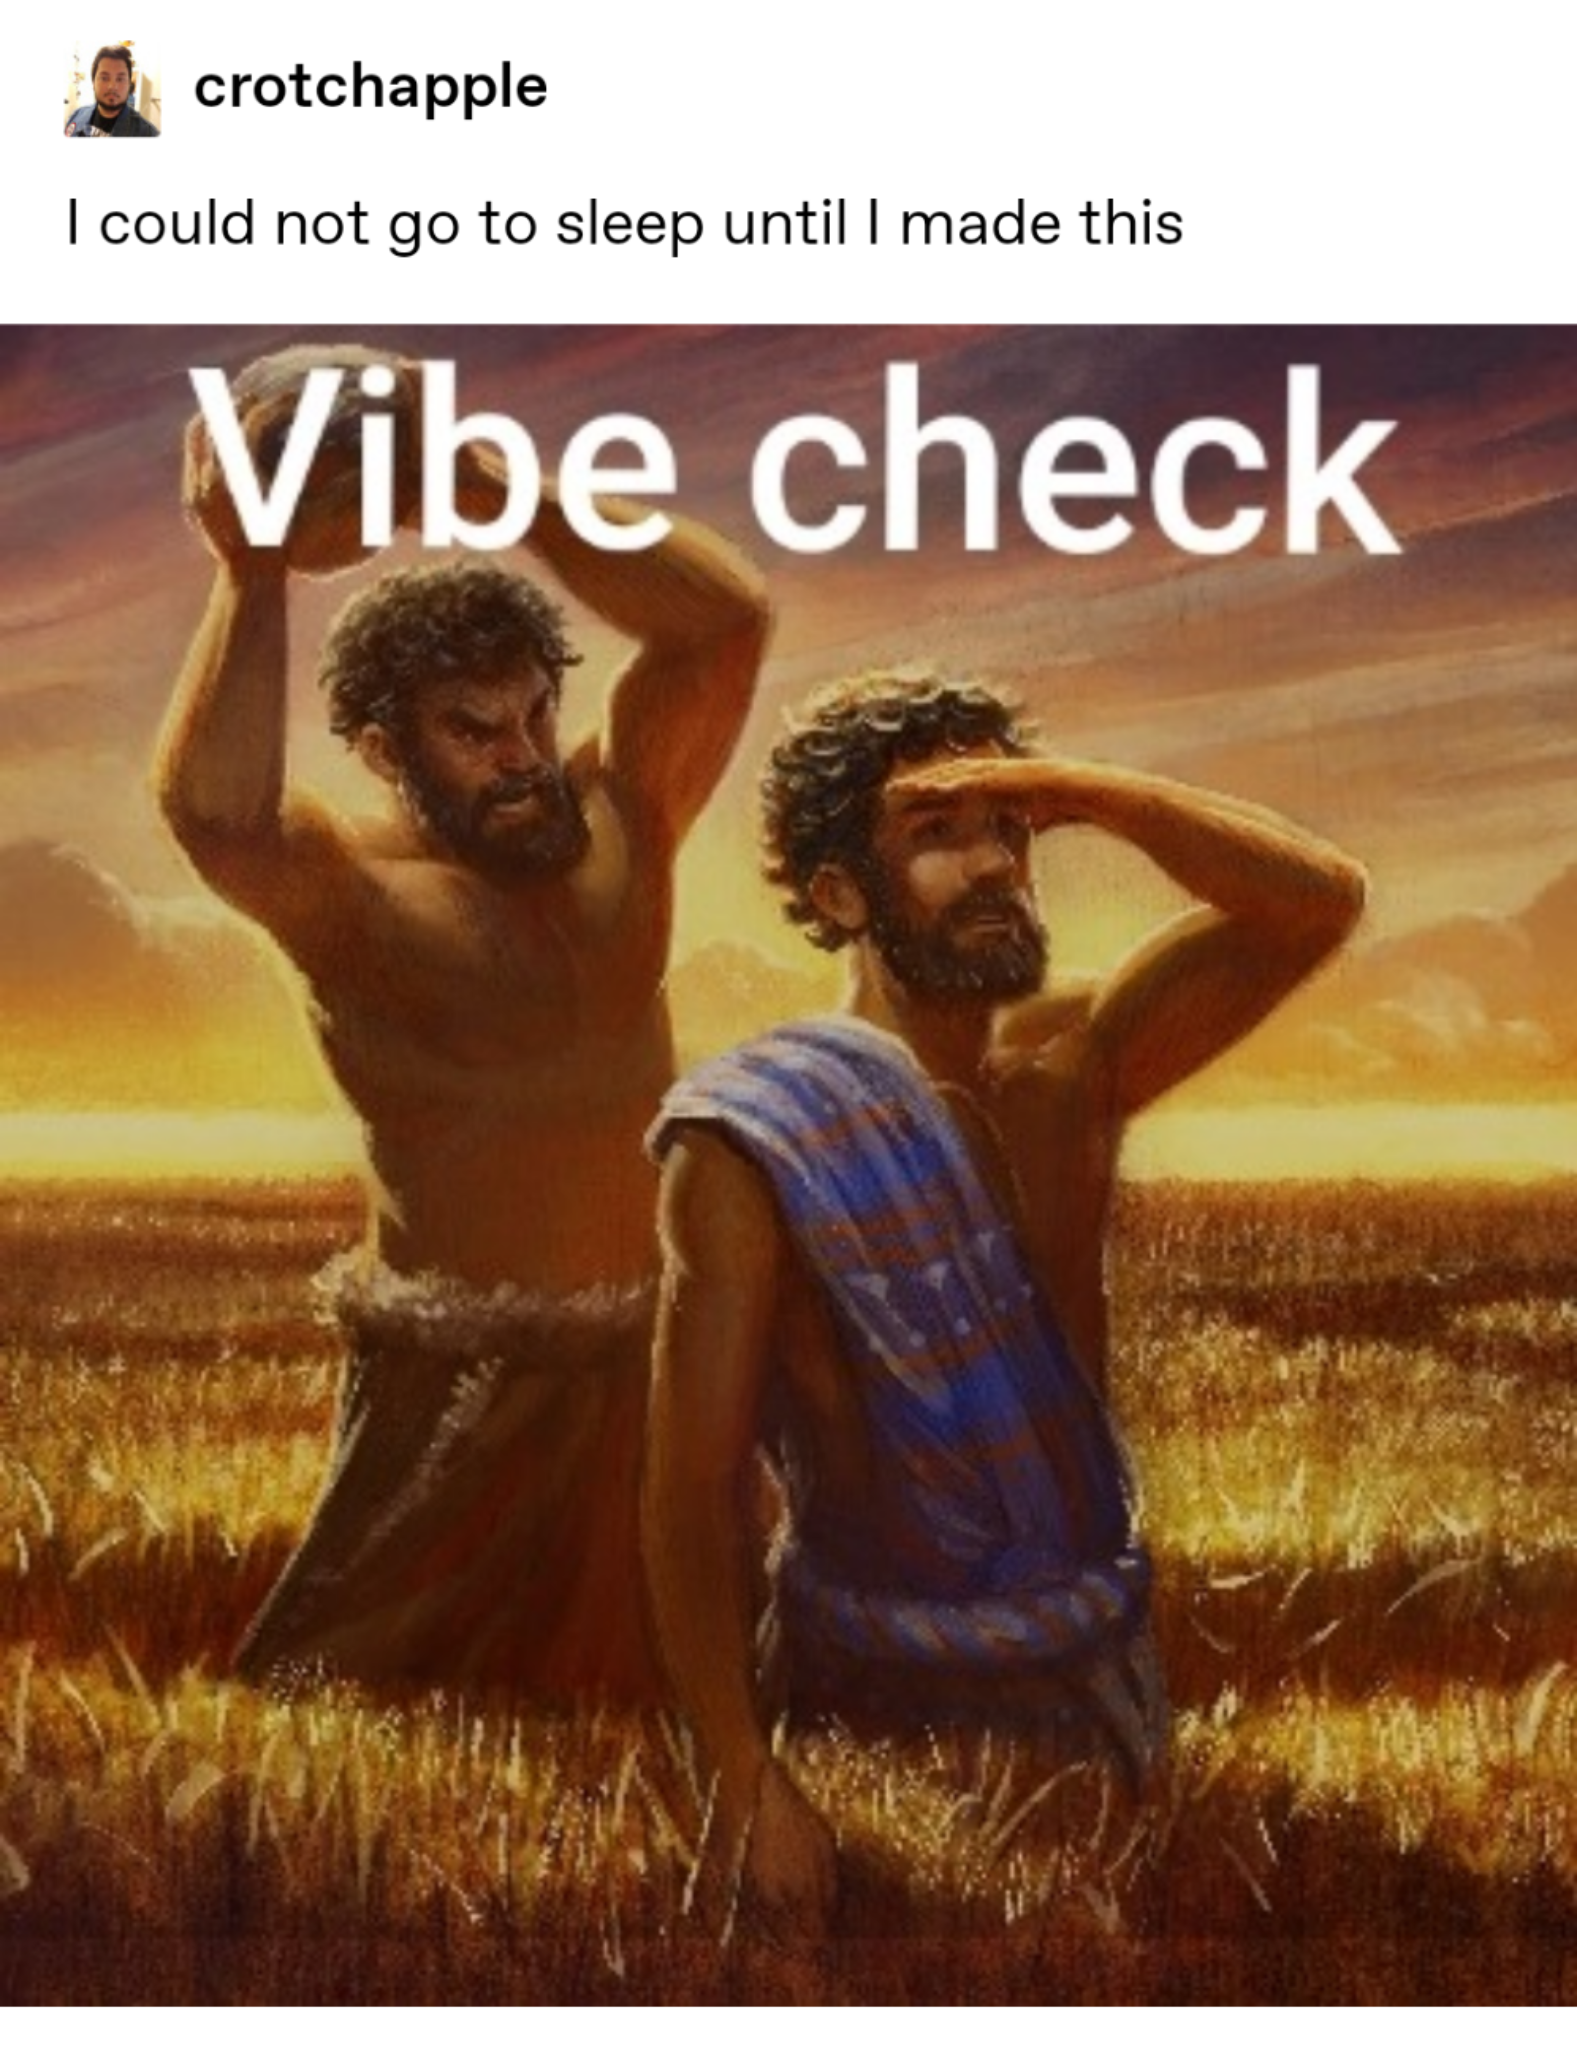 vibe check meme explained